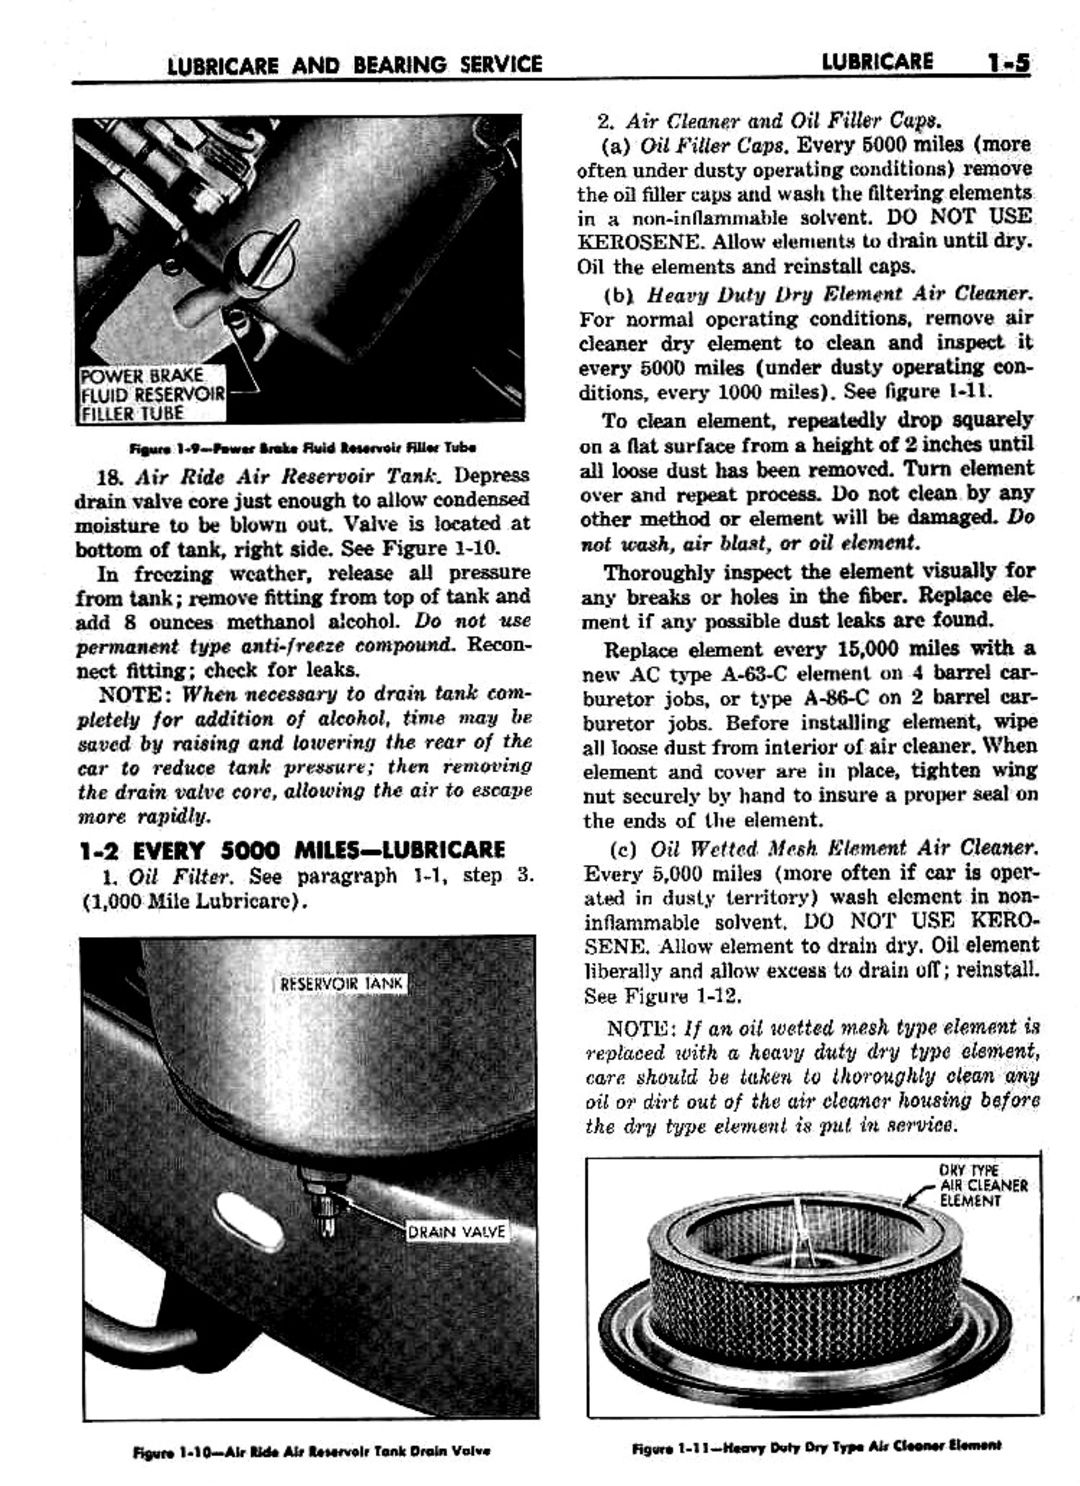 n_02 1959 Buick Shop Manual - Lubricare-005-005.jpg